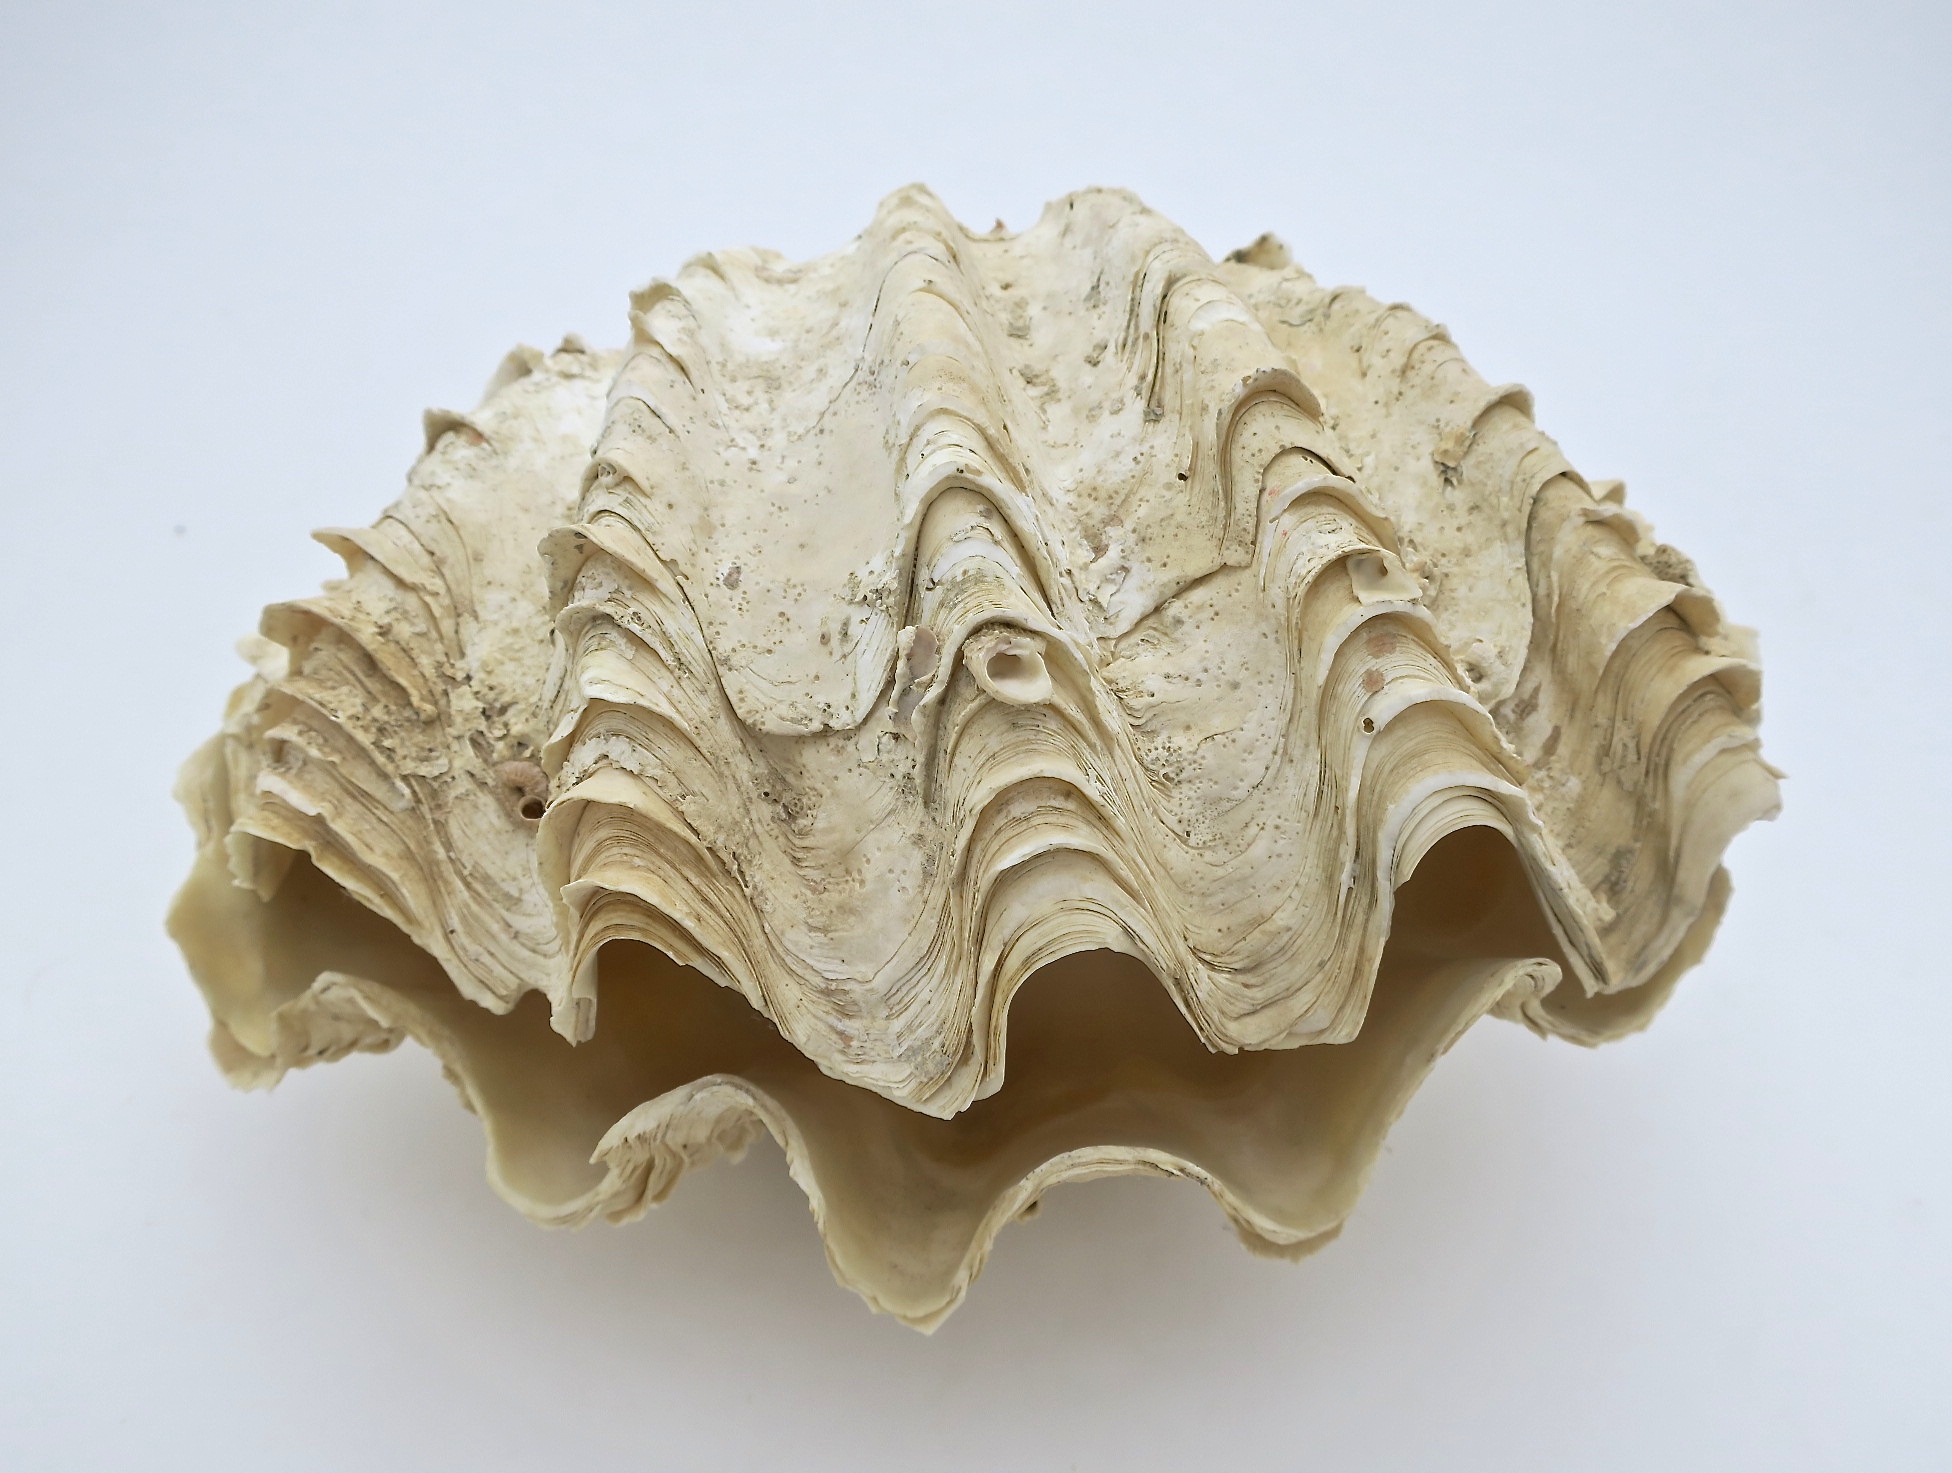 tridacna mördermuschel muschel shell badezimmer interior verliebt hochzeit wedding natur nature nautic nautisch ocean ozean